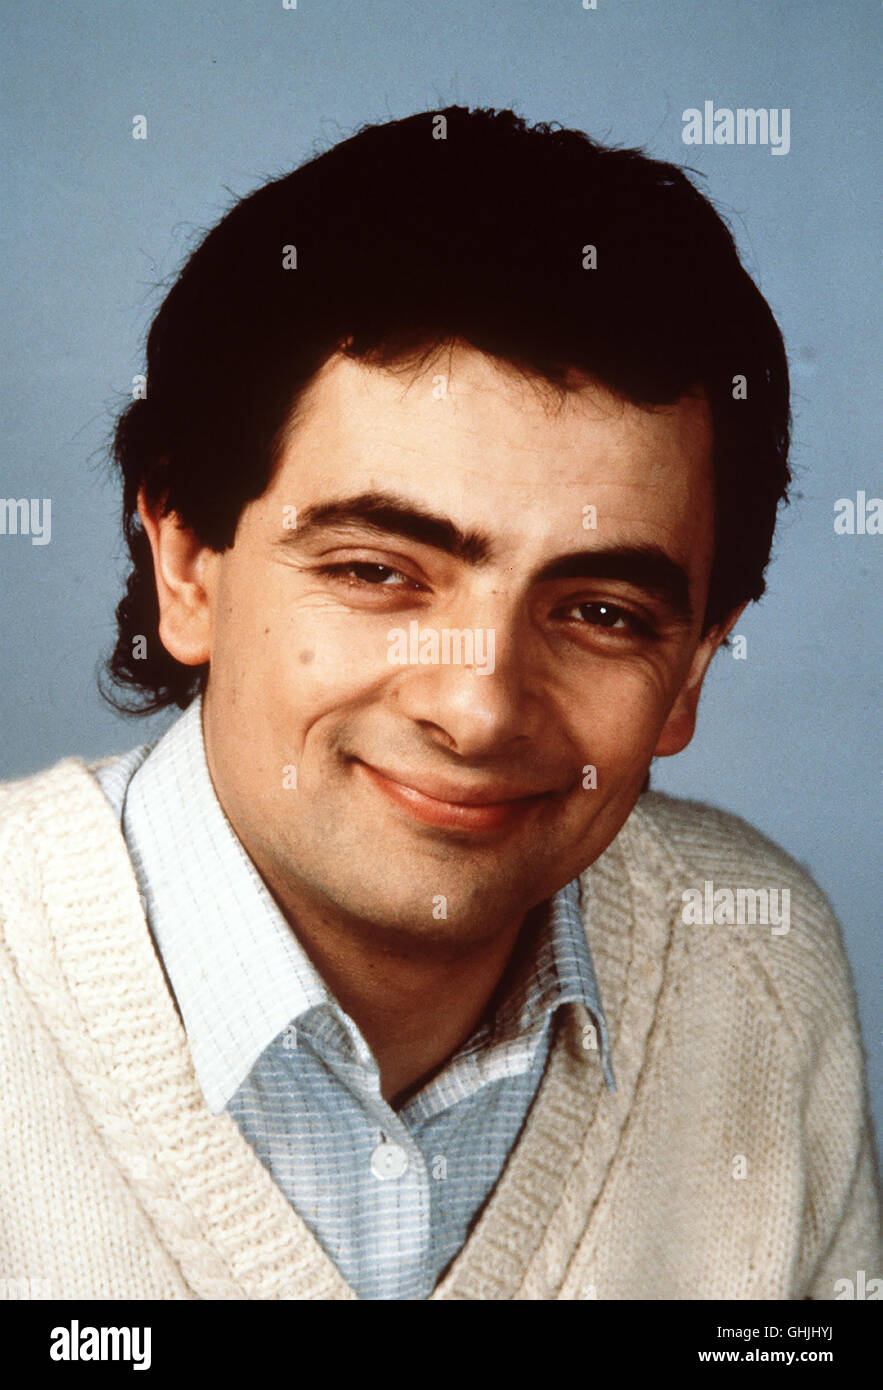 Das Rowan Atkinson-Special - per Zeitmaschine direkt aus den 70er Jahren gekommen, ist ein schlagender Beweis dafür, daß der brillante Komiker schon damals alle Qualitäten besaß, die ihn in den 90ern zur Kultfigur werden ließen. Bild: ROWAN ATKINSON aka. ROWAN ATKINSON - Die frühen Jahre Stock Photo